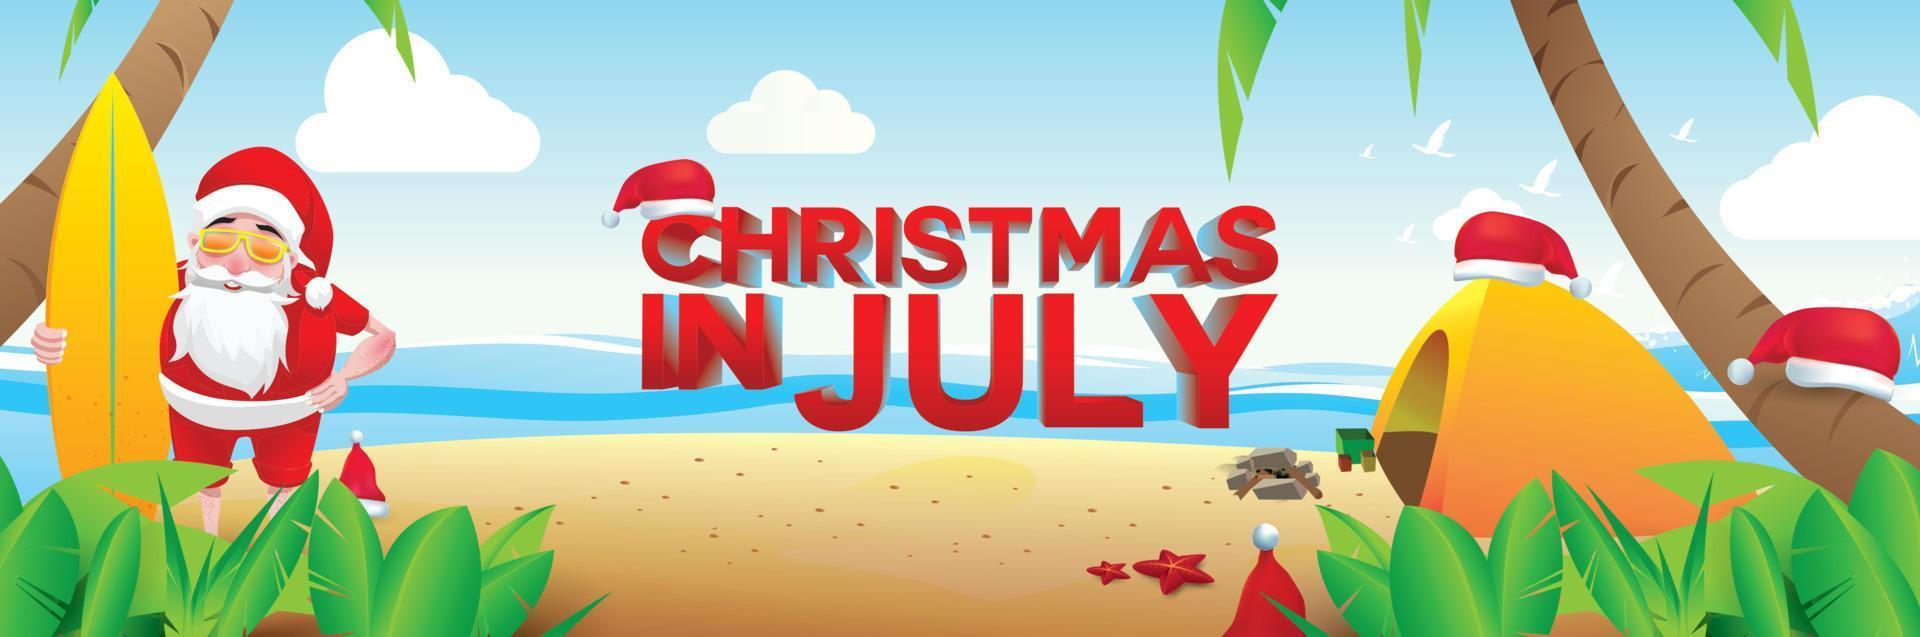 weihnachten im juni, juli, august, für plakat, marketing, werbung, sommerschlussverkauf, grußkarte. weihnachtsmann im sommer mit kopierraum für text vektor